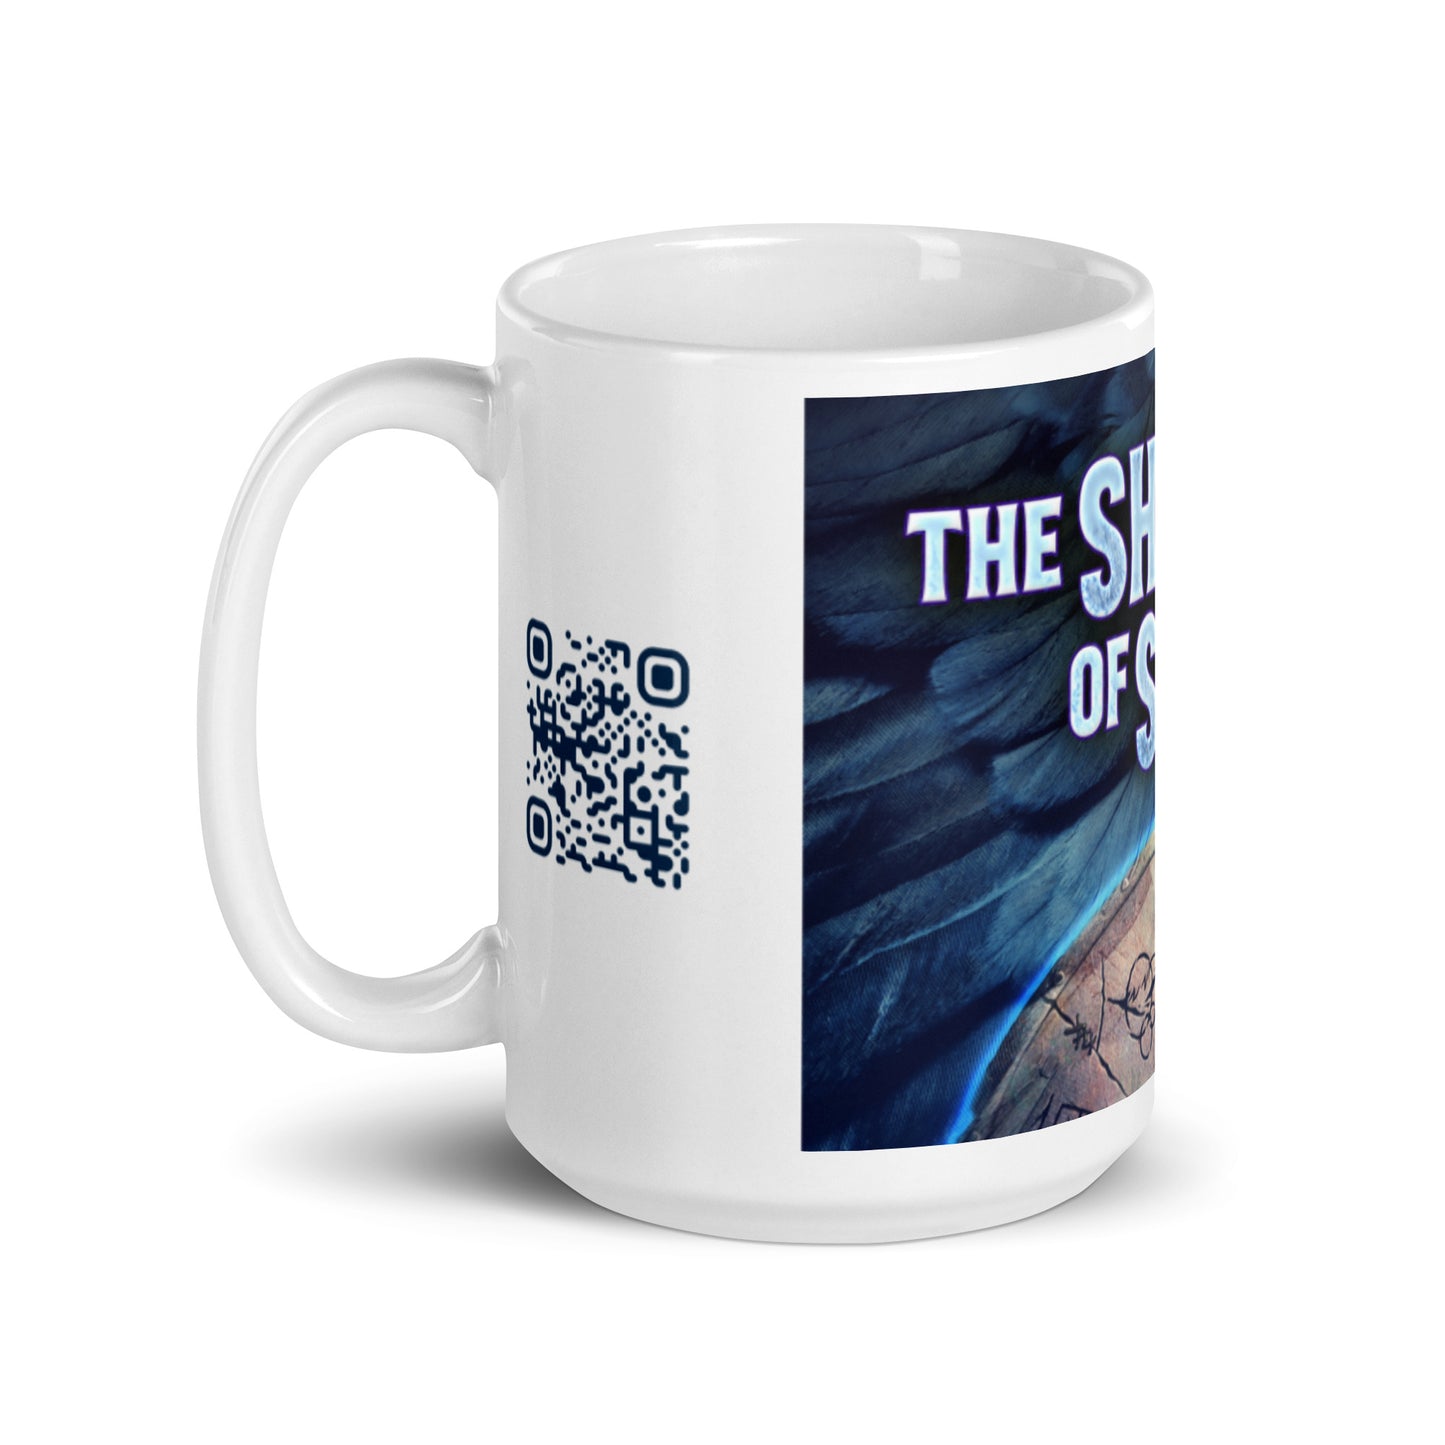 The Shield Of Soren - White Coffee Mug